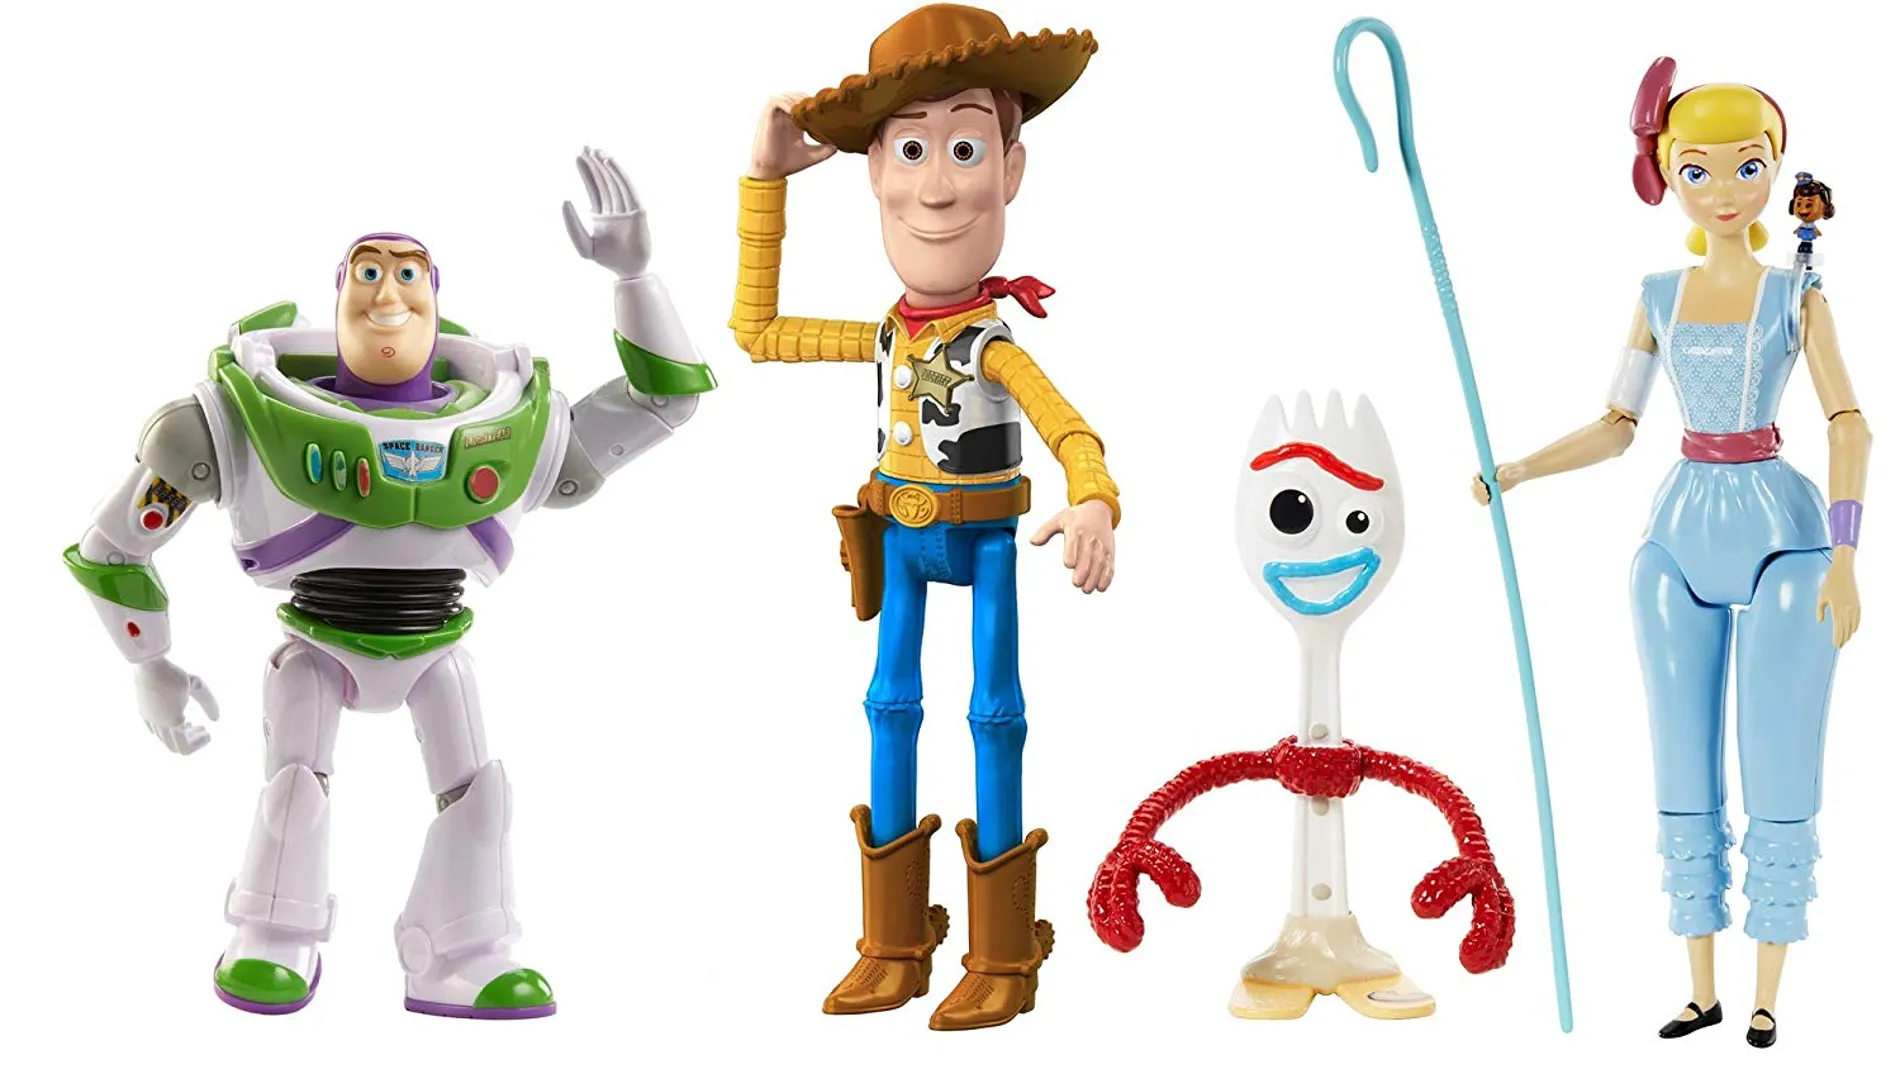 ¿Te gustó Toy Story 4? Los juguetes de la película recomendados